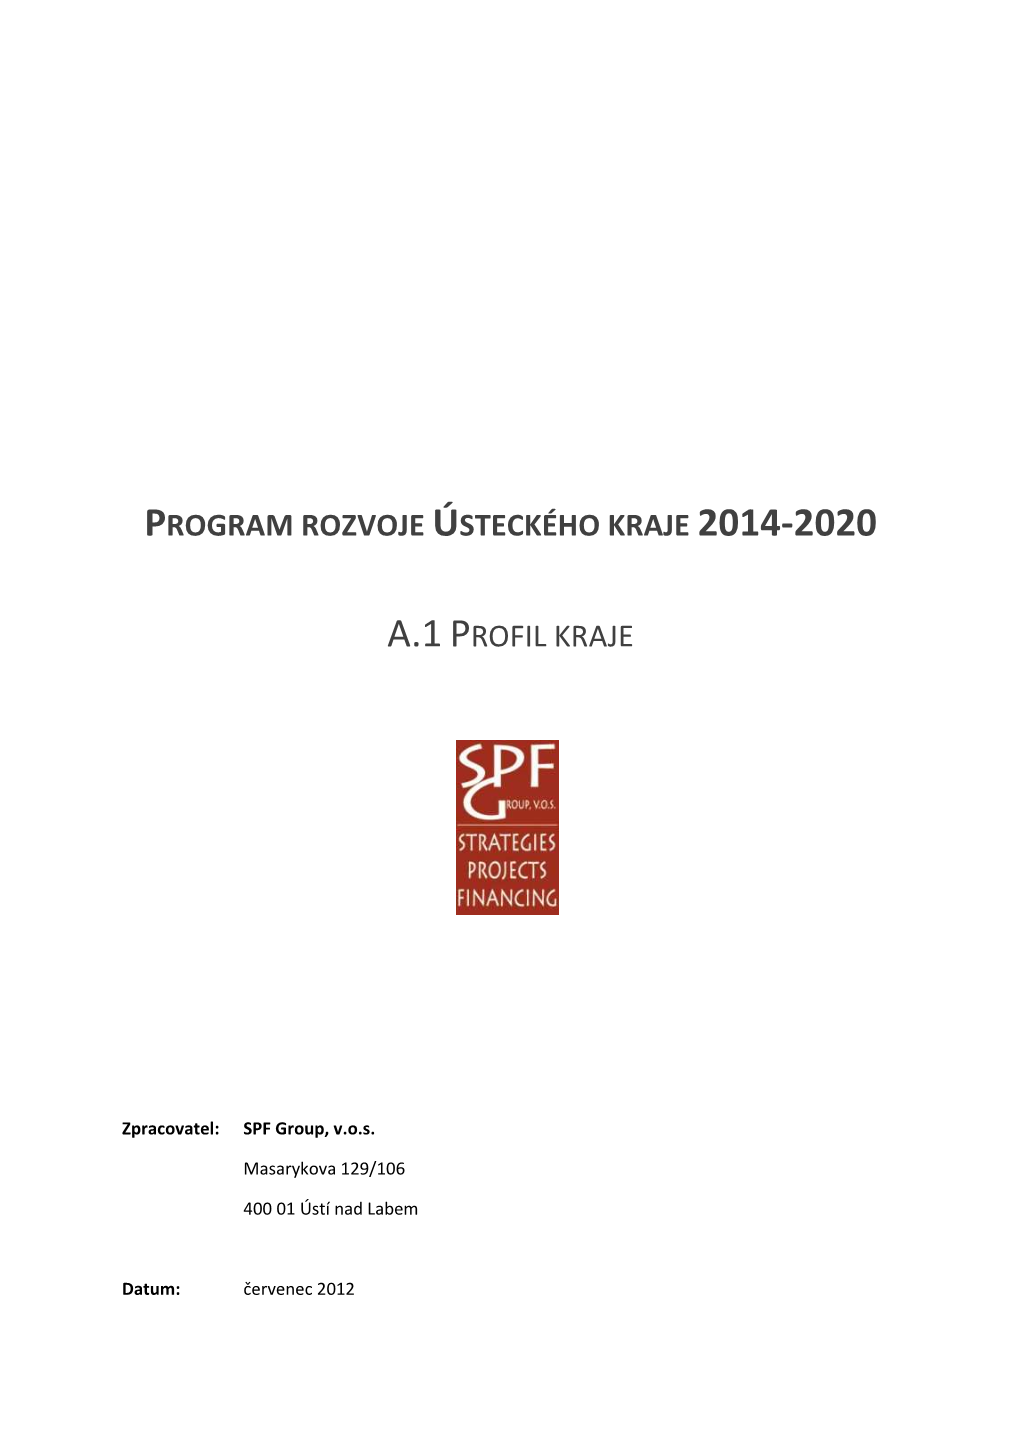 Program Rozvoje Ústeckého Kraje 2014 – 2020